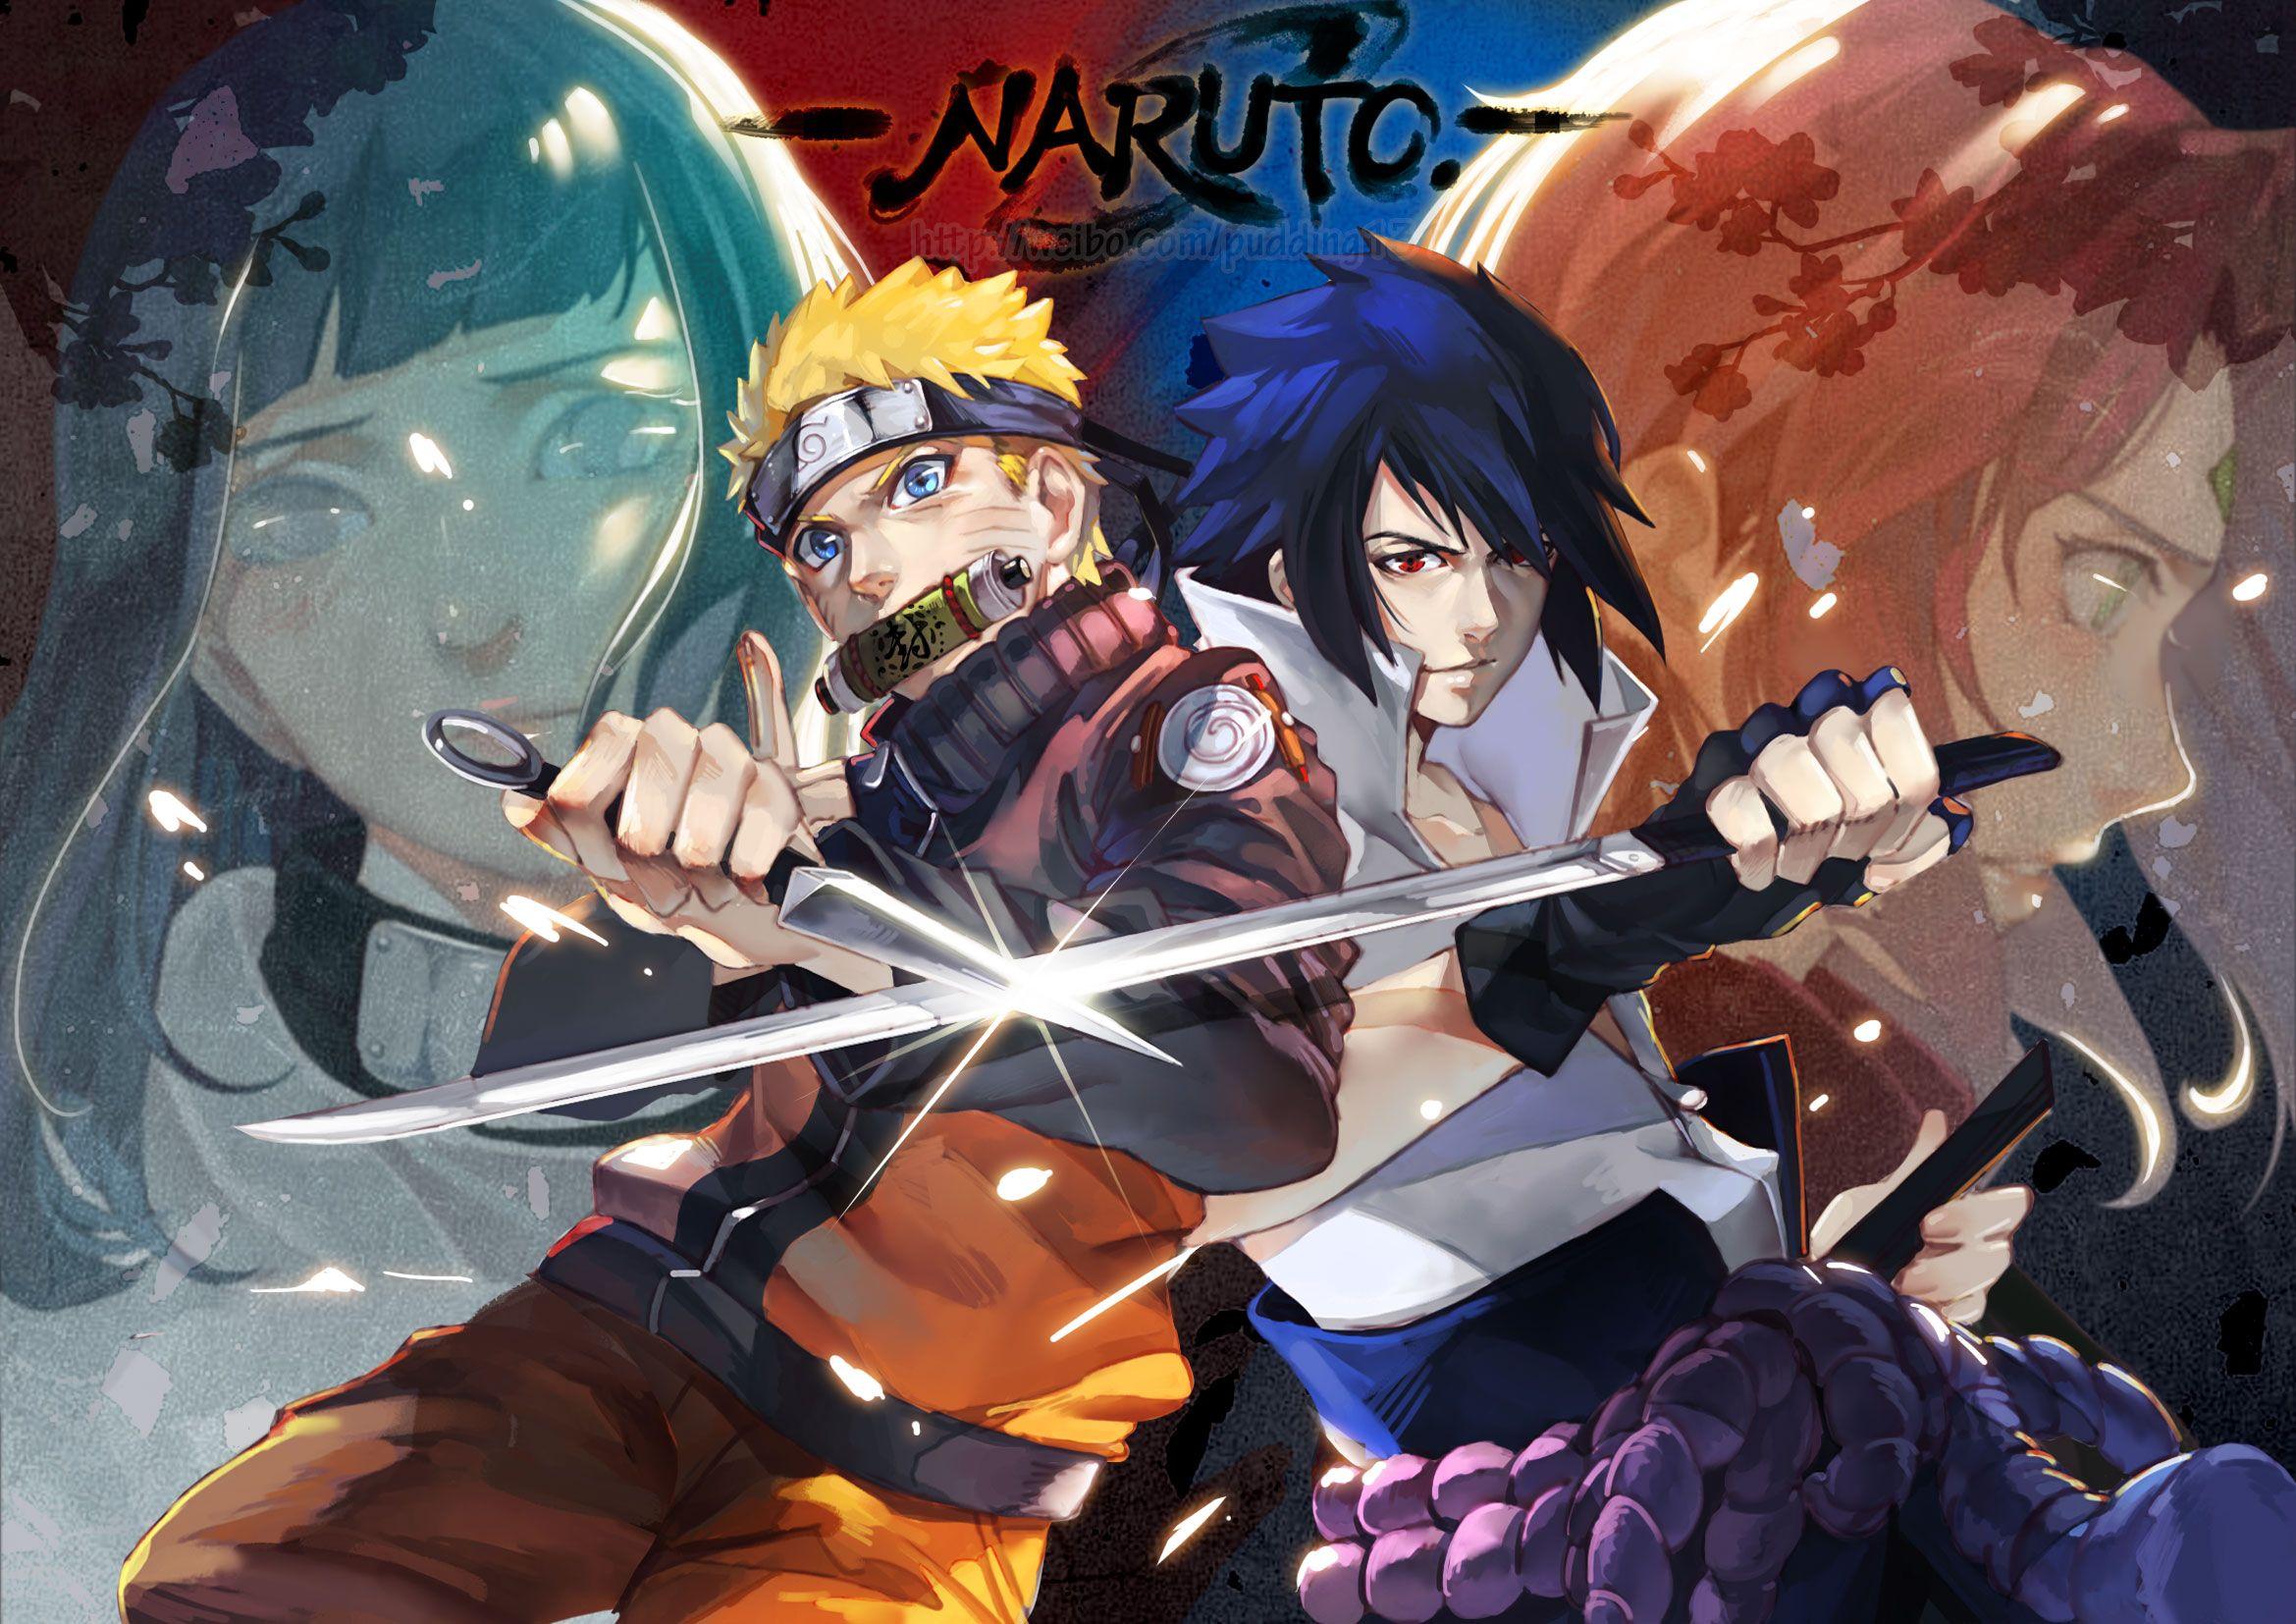 Naruto Hinata Sakura and Sasuke Wallpapers - Top Free Naruto Hinata